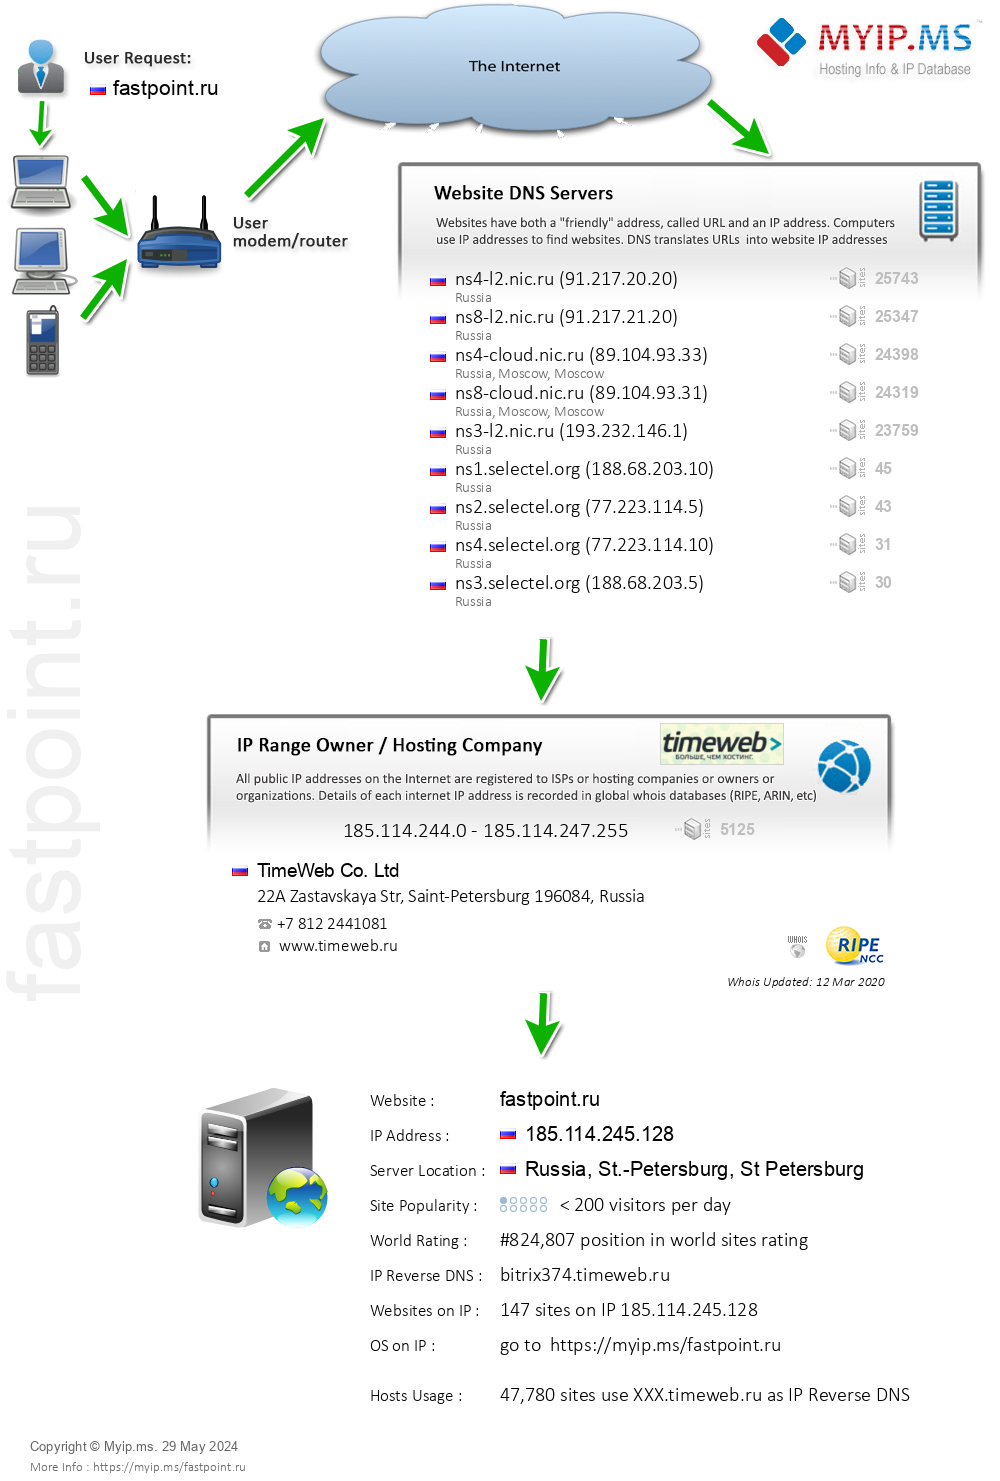 Fastpoint.ru - Website Hosting Visual IP Diagram